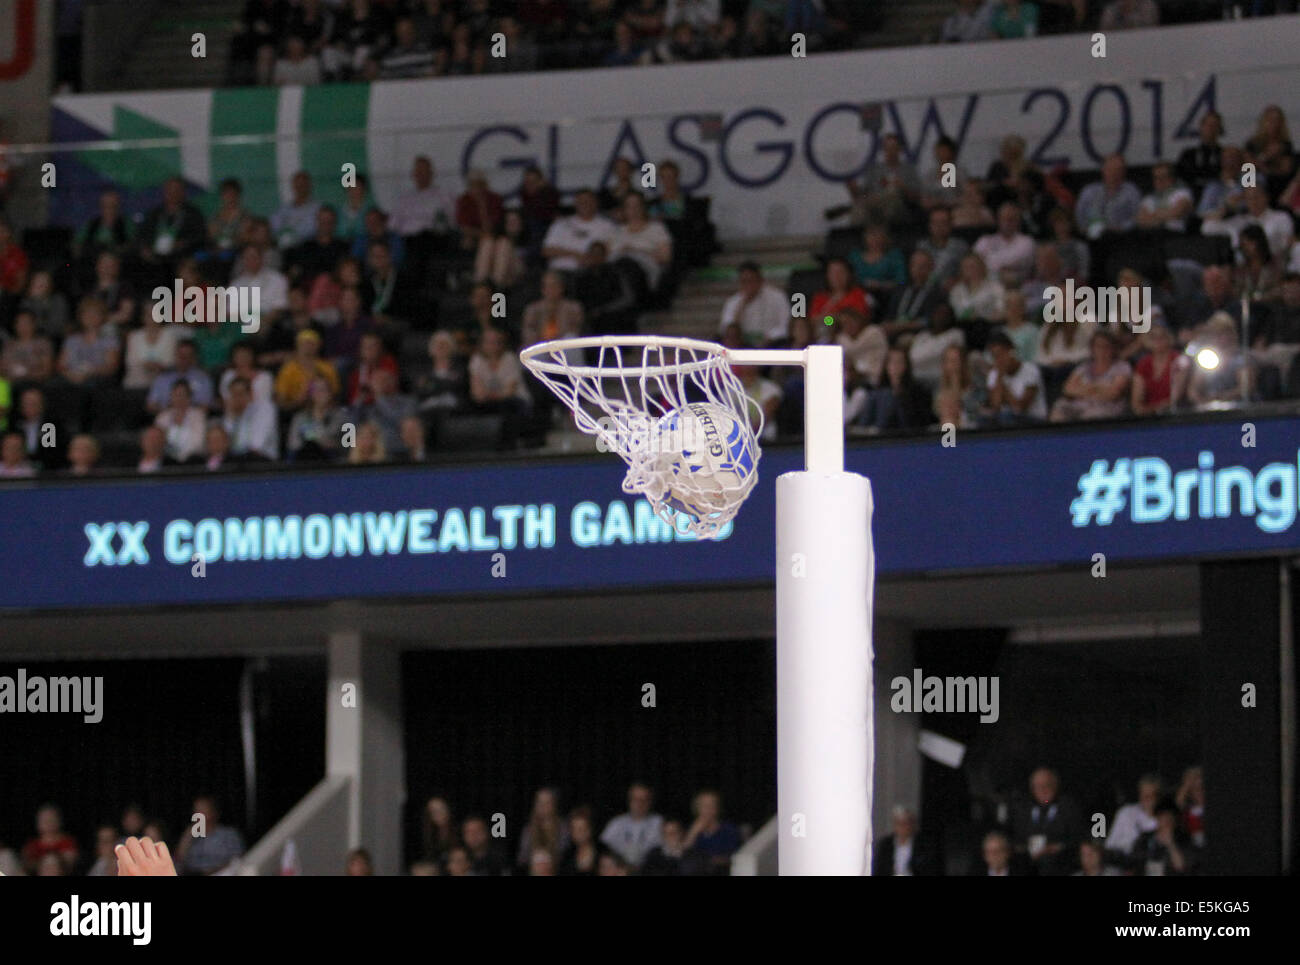 SSE Hydro Glasgow 3 août 2014. Journée des Jeux du Commonwealth de Glasgow 11. Le netball Aus final v NZL. L'Australie de prendre l'or par 58 buts à 40. Banque D'Images